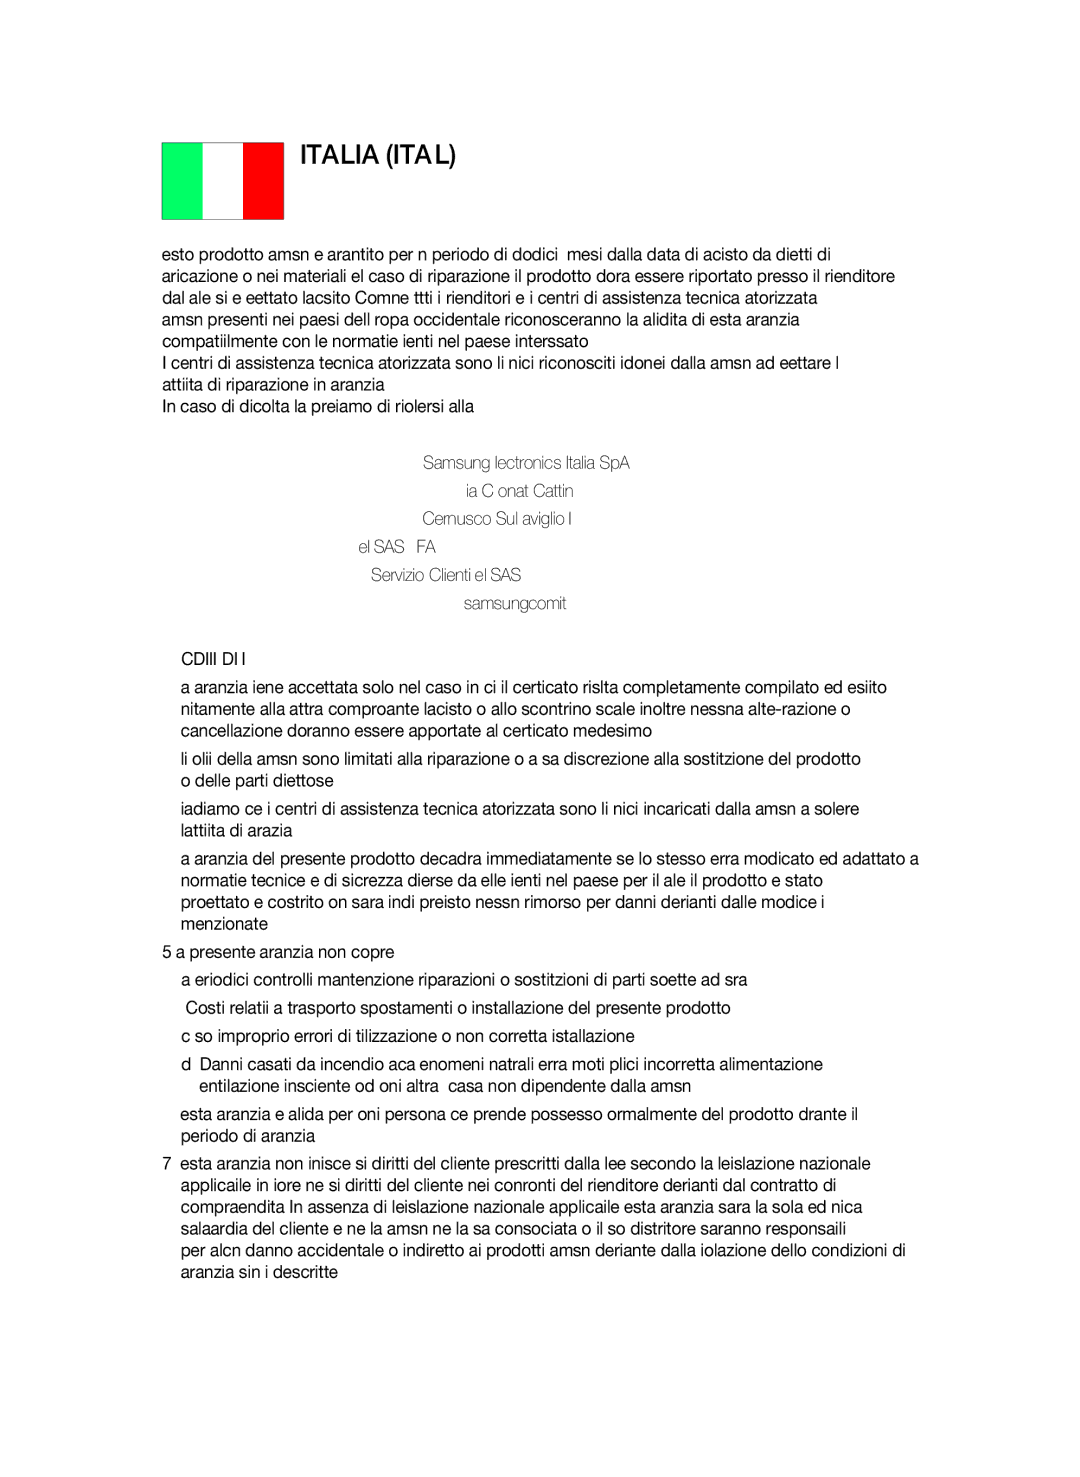 Samsung BD-C7500/EDC, BD-C7500/XEF manual Italia Italy, @ Condizioni DI Garanzia 